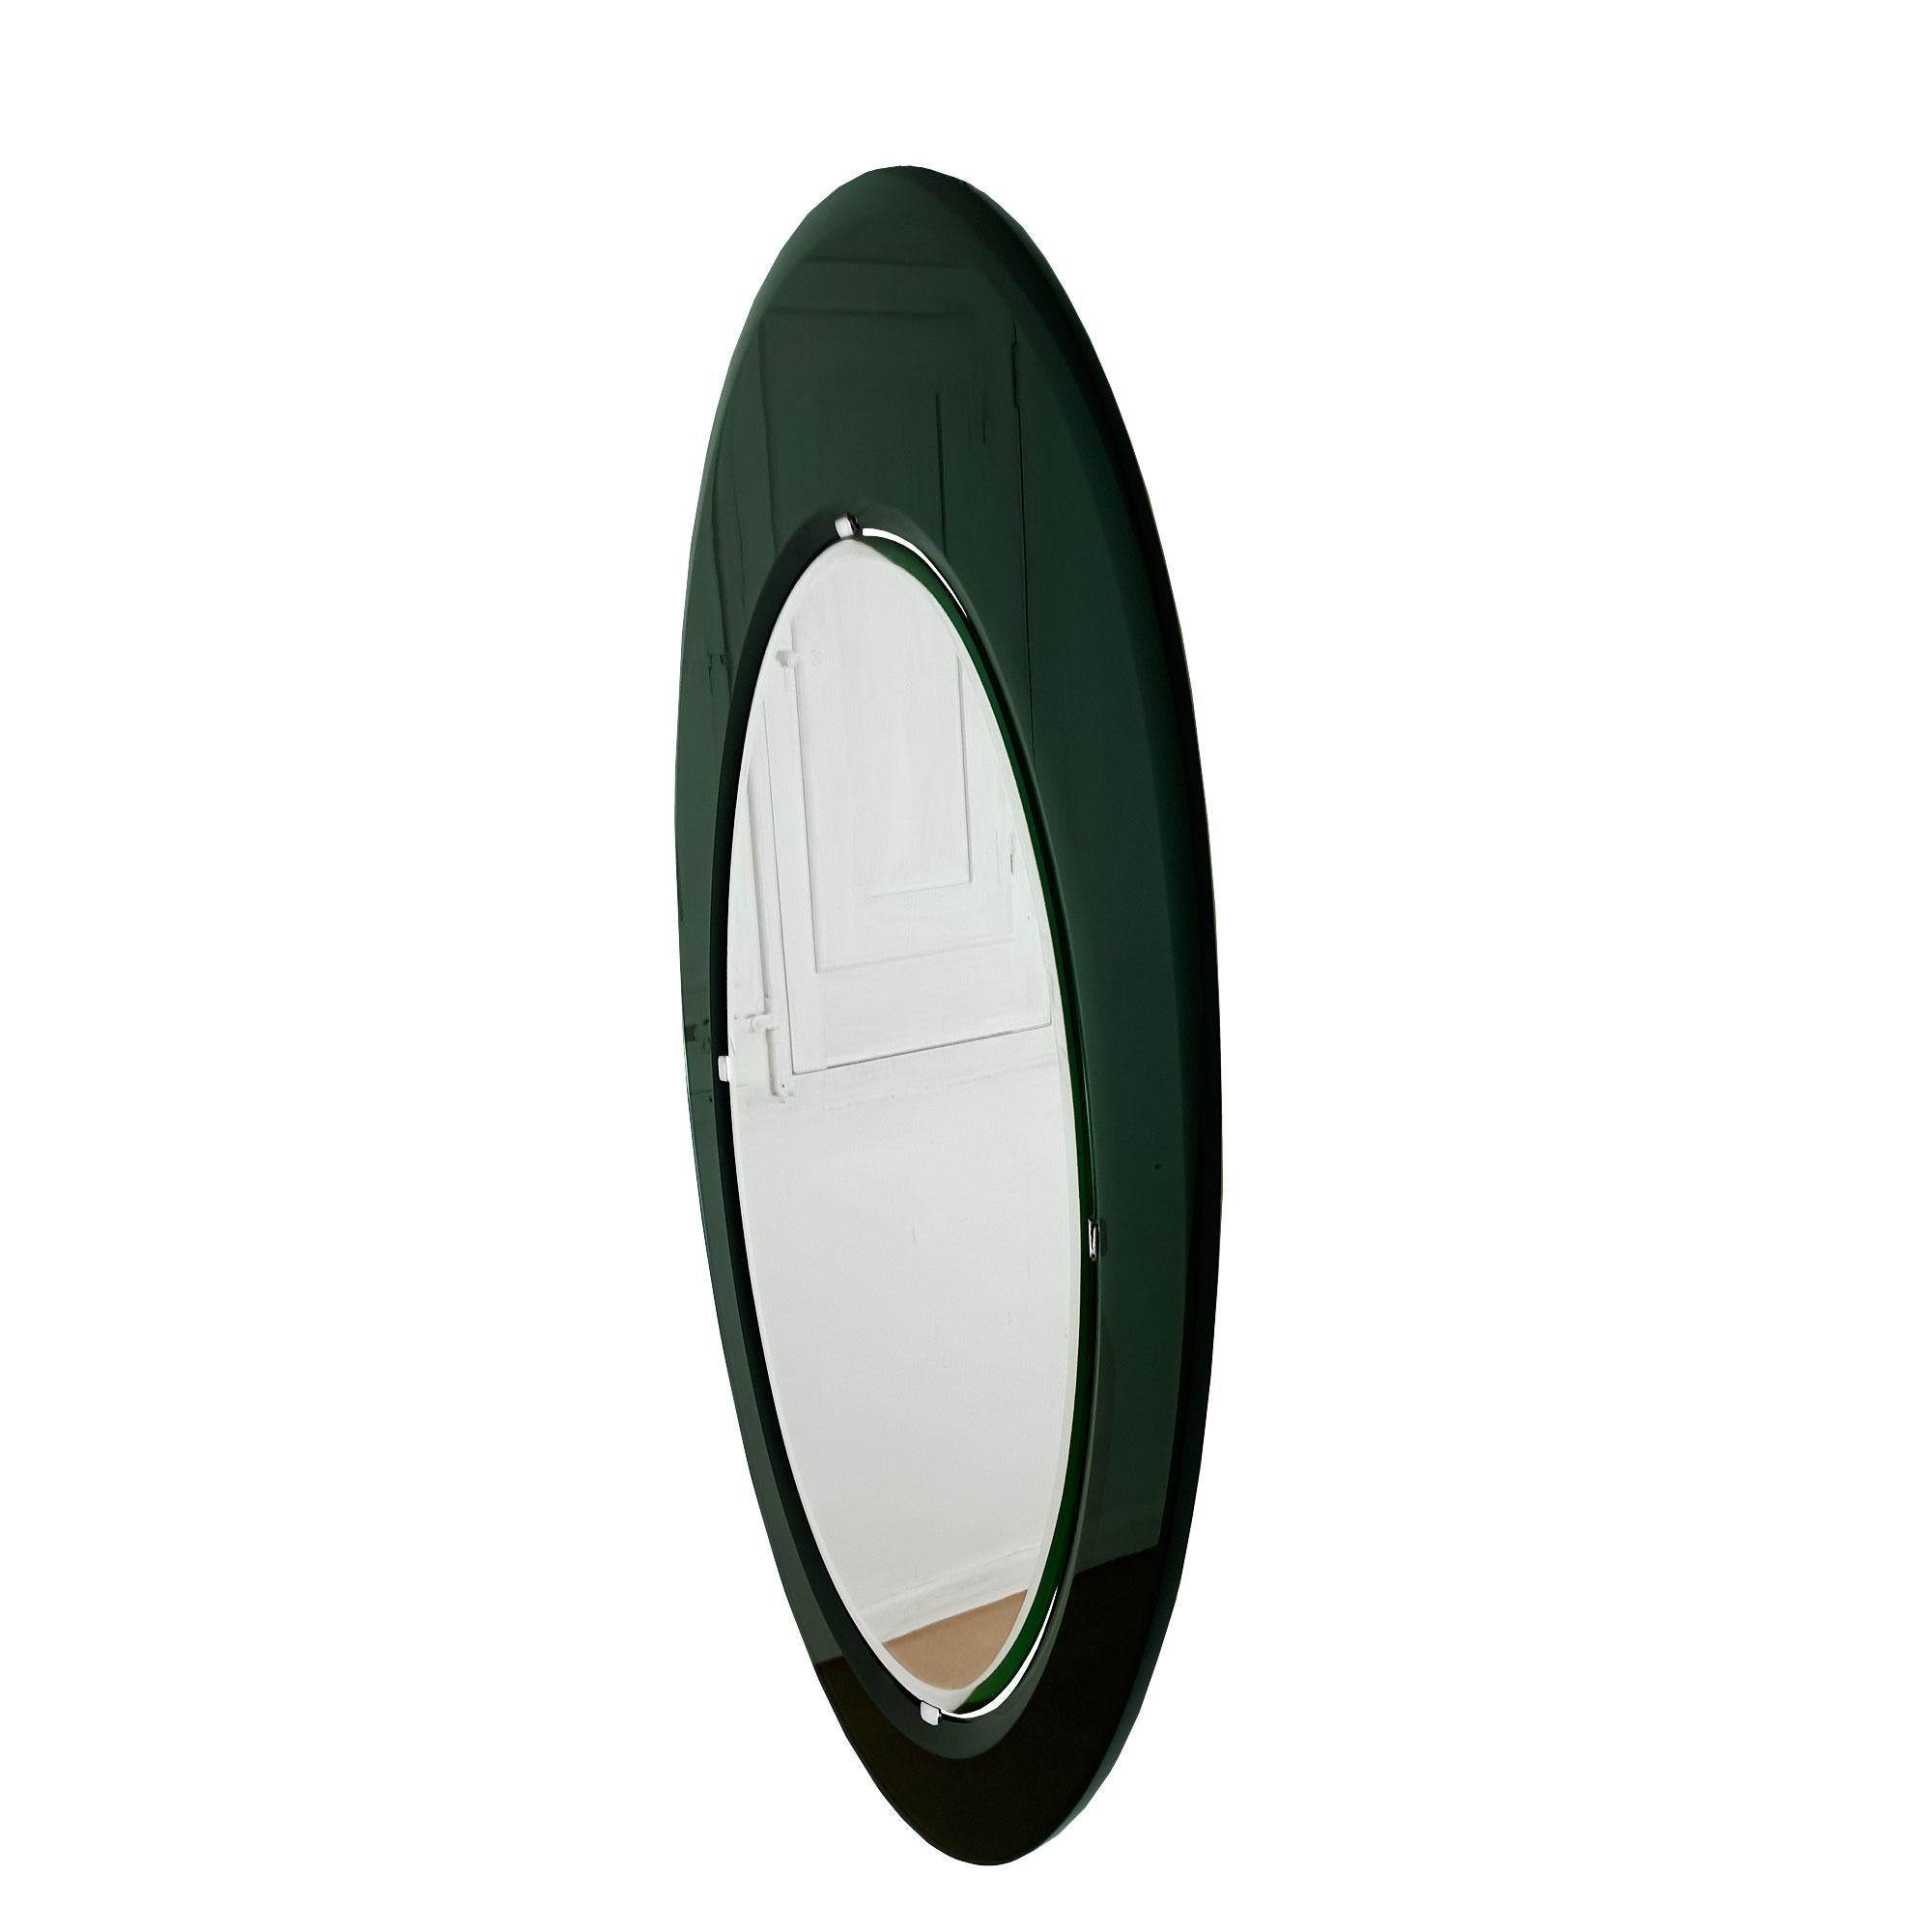 Spectaculaire grand miroir ovale. Miroir biseauté monté dans un cadre asymétrique vert foncé biseauté à l'intérieur et à l'extérieur (système de fixation élaboré et amovible). Artisanat de très haute qualité.
Attribué à Fontana Arte.

Italie 1960